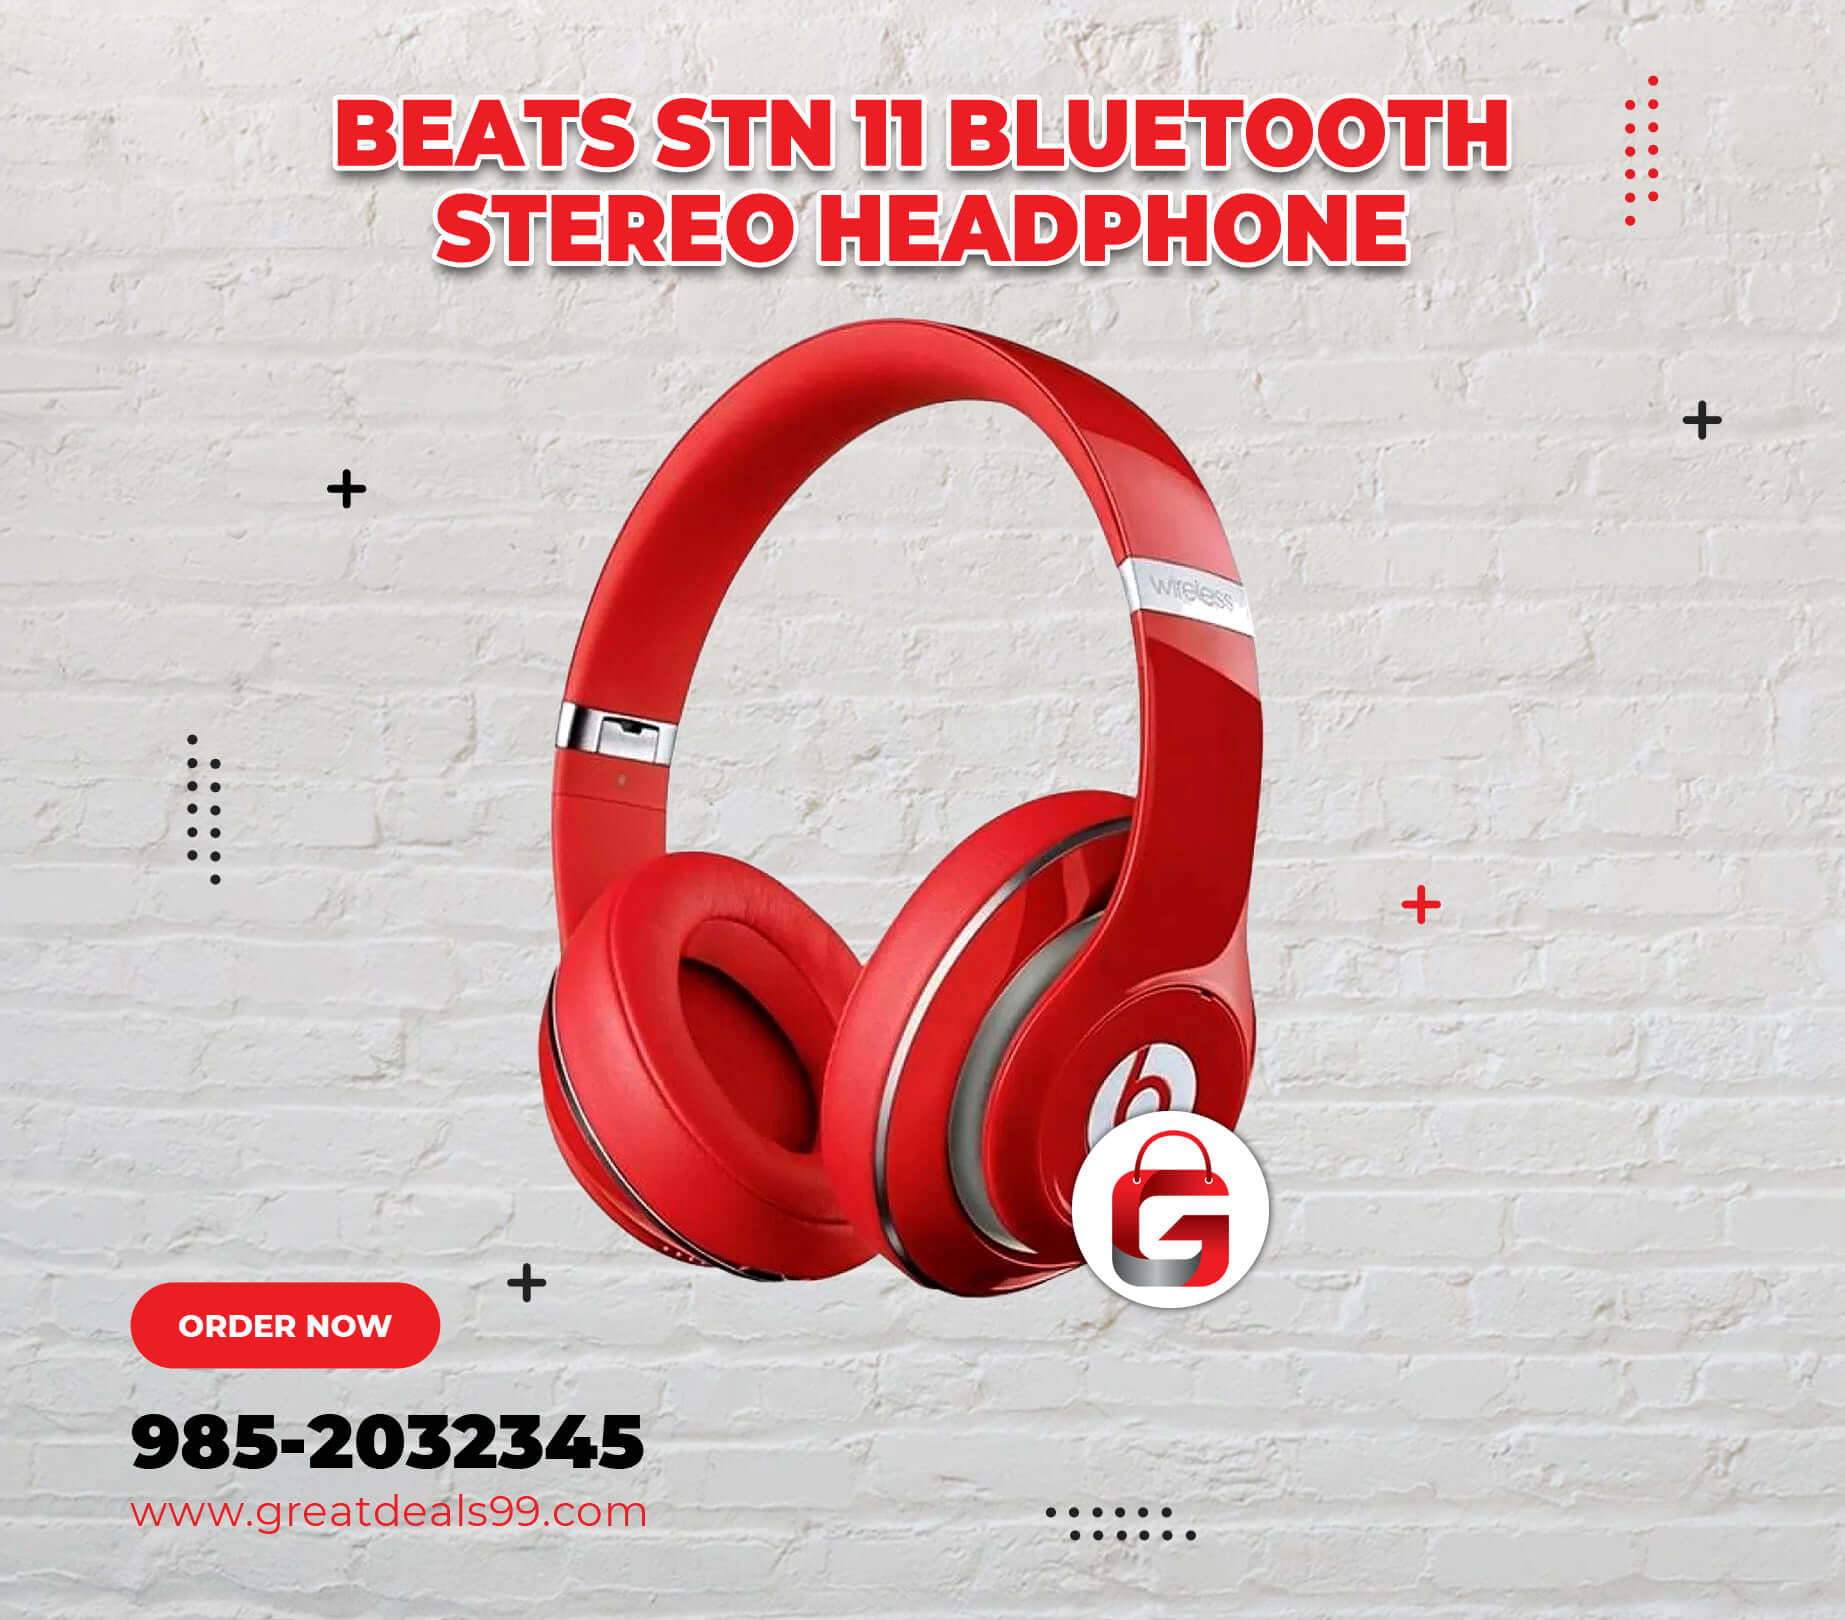 Beats STN 11 Bluetooth Stereo Headphone - Facebook post design for GreatDeals99